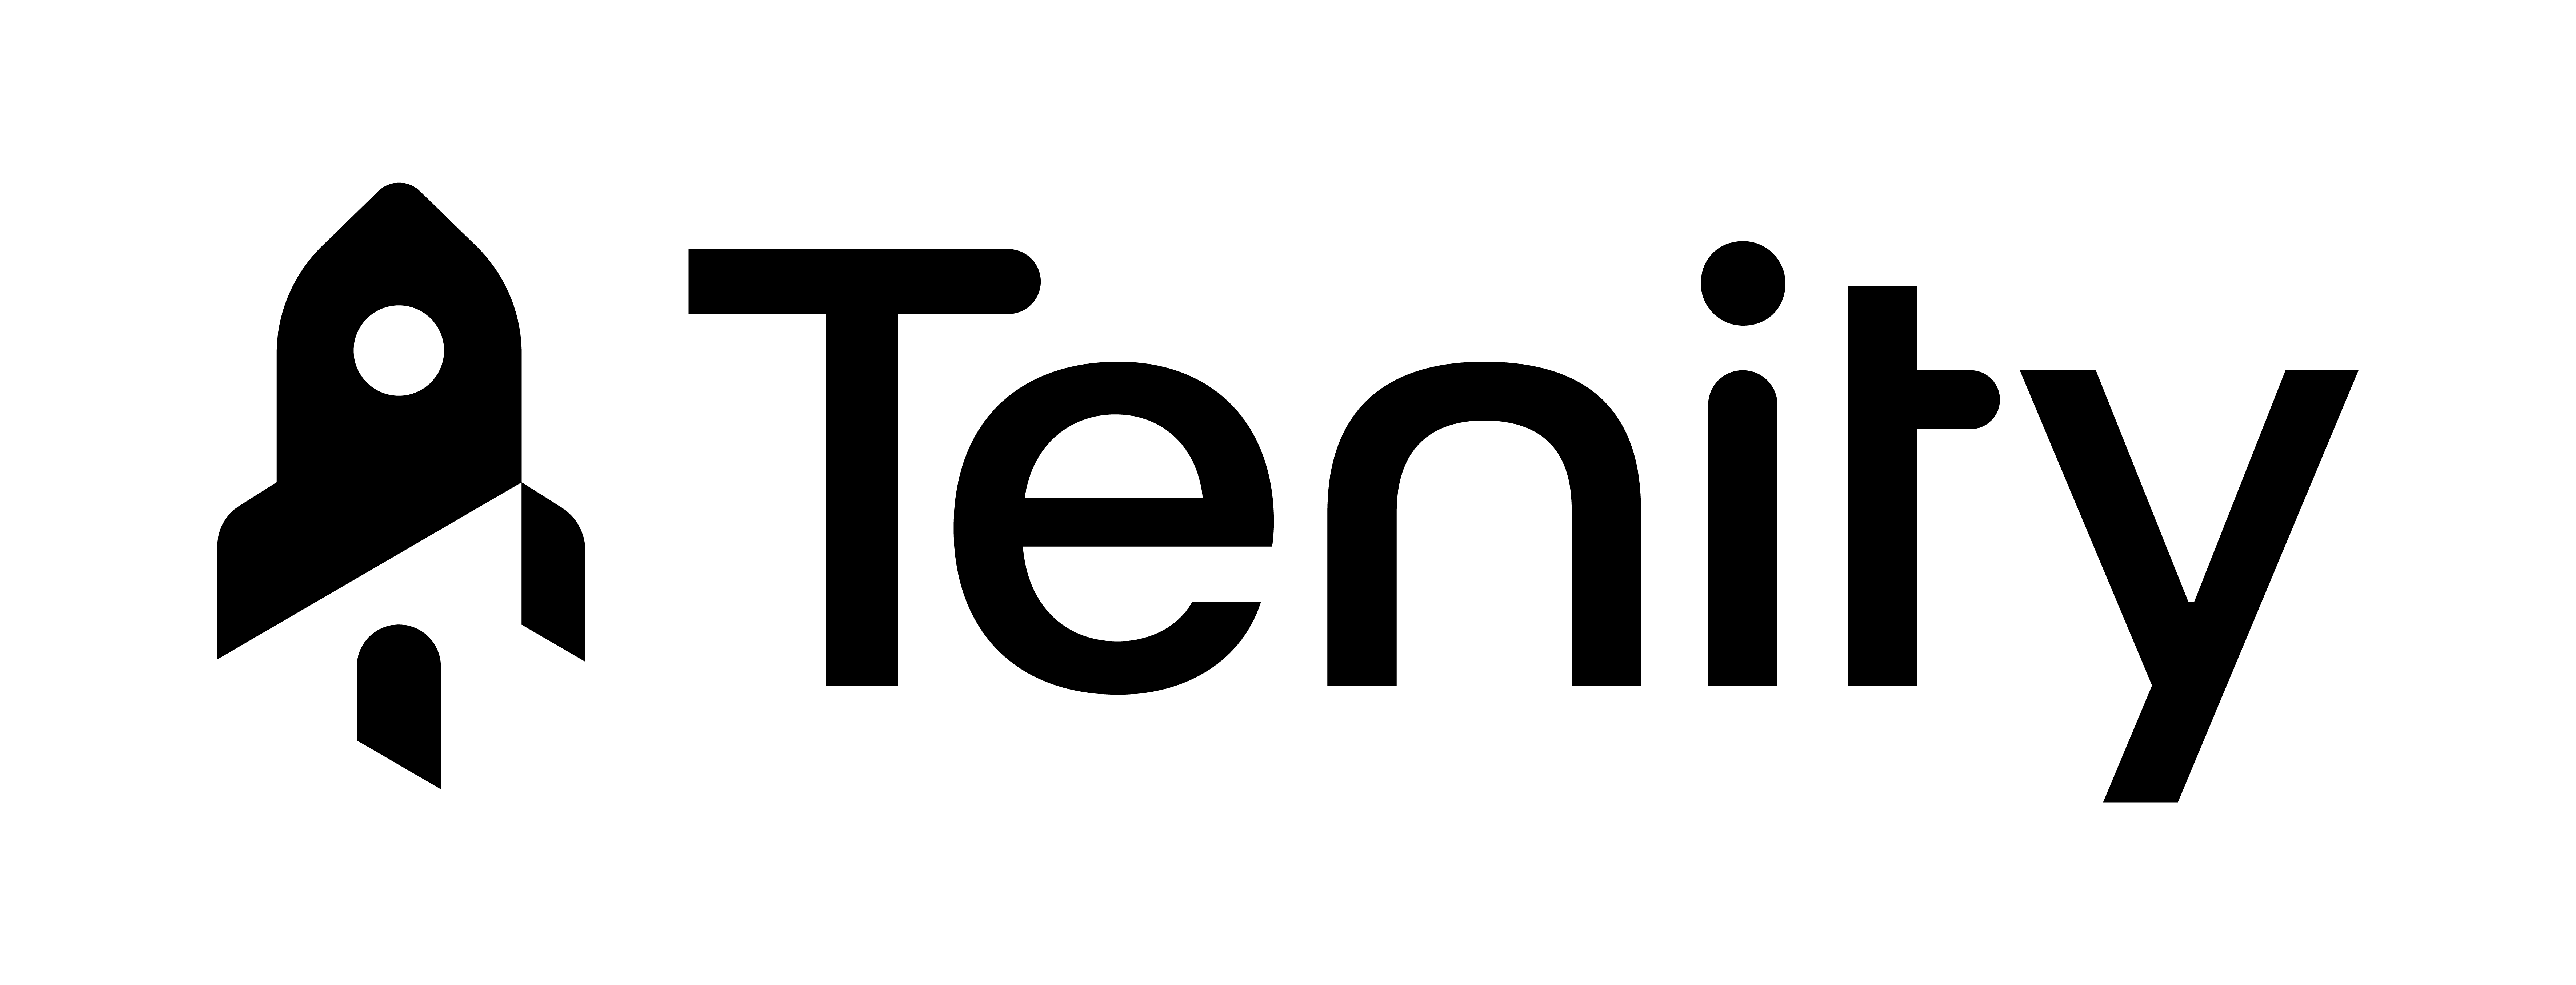 Tenity Logo